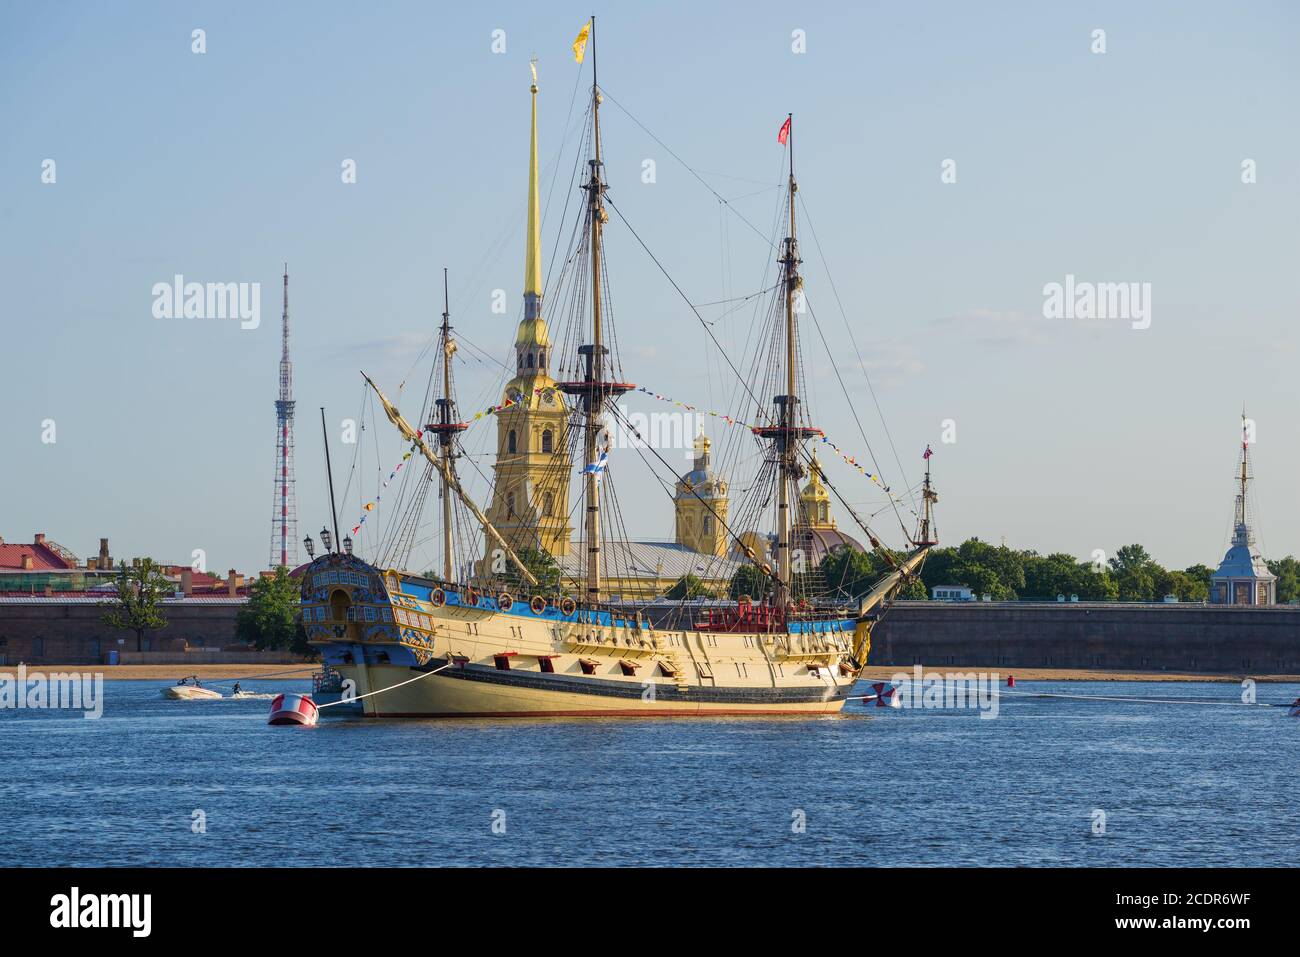 SANKT PETERSBURG, RUSSLAND - 25. JULI 2019: Russisches Schlachtschiff 'Poltava' vor der Peter und Paul Kathedrale an einem Julitag Stockfoto